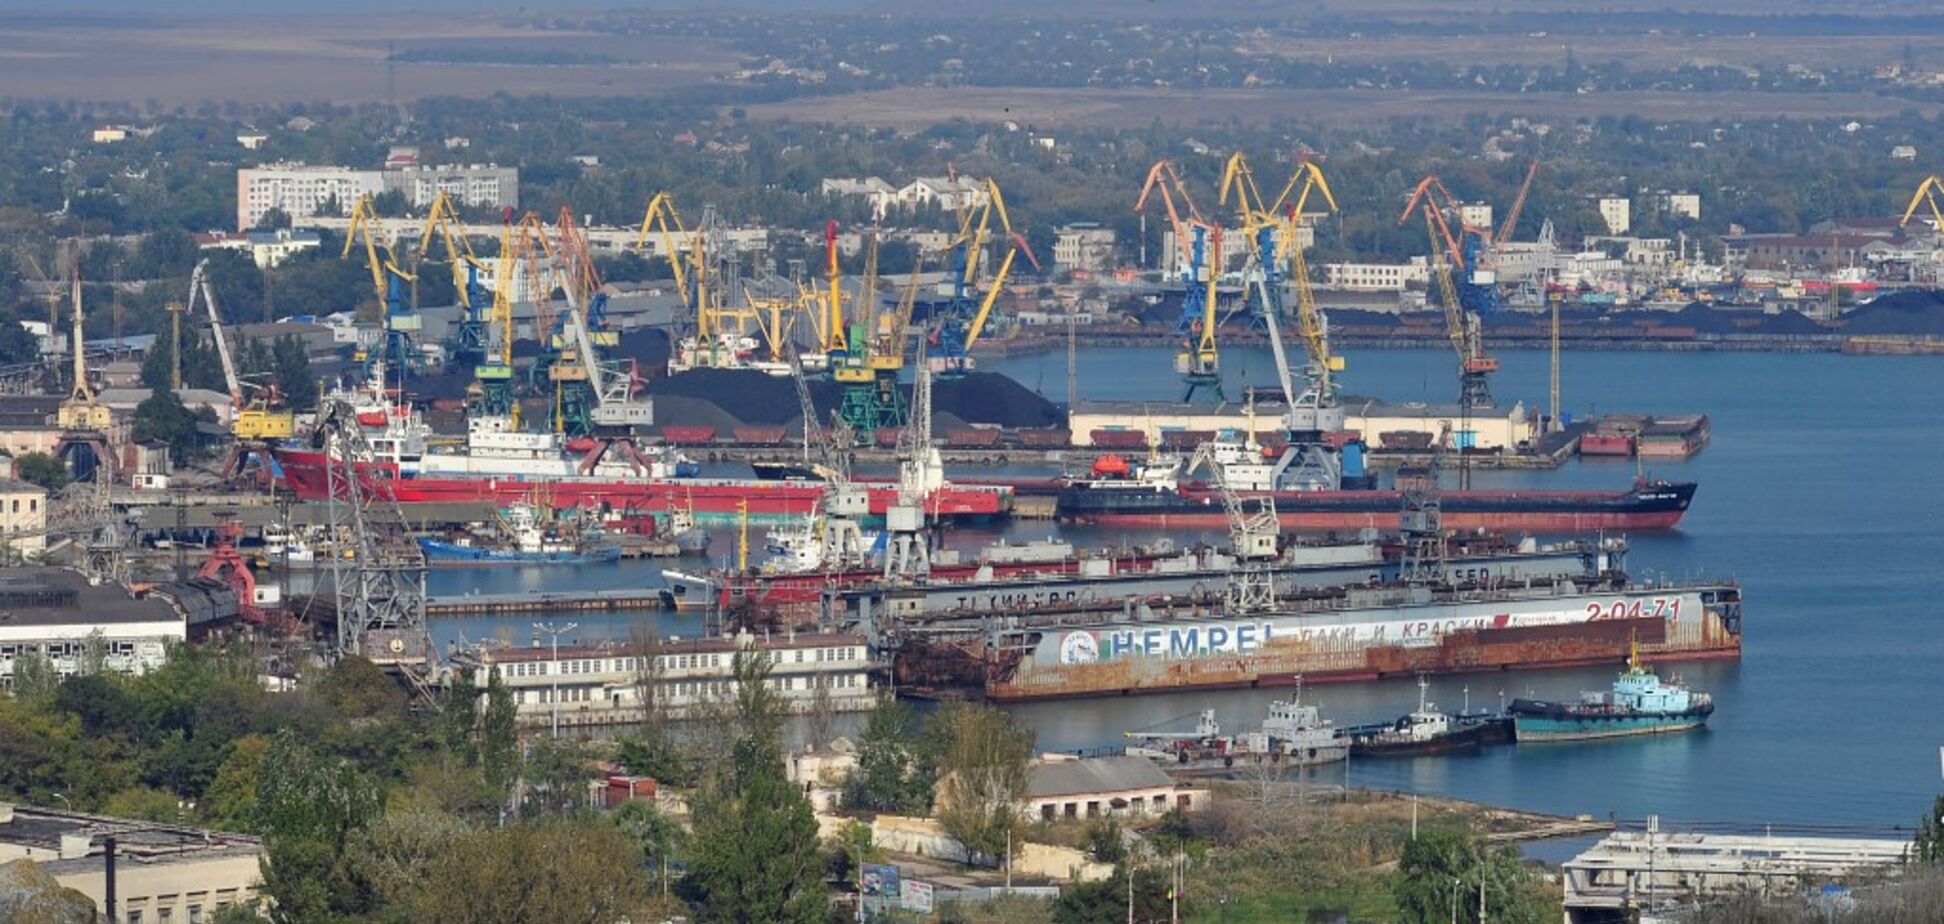 Потратят 165 млн: в портах Керченской переправы выставят десятки стрелков